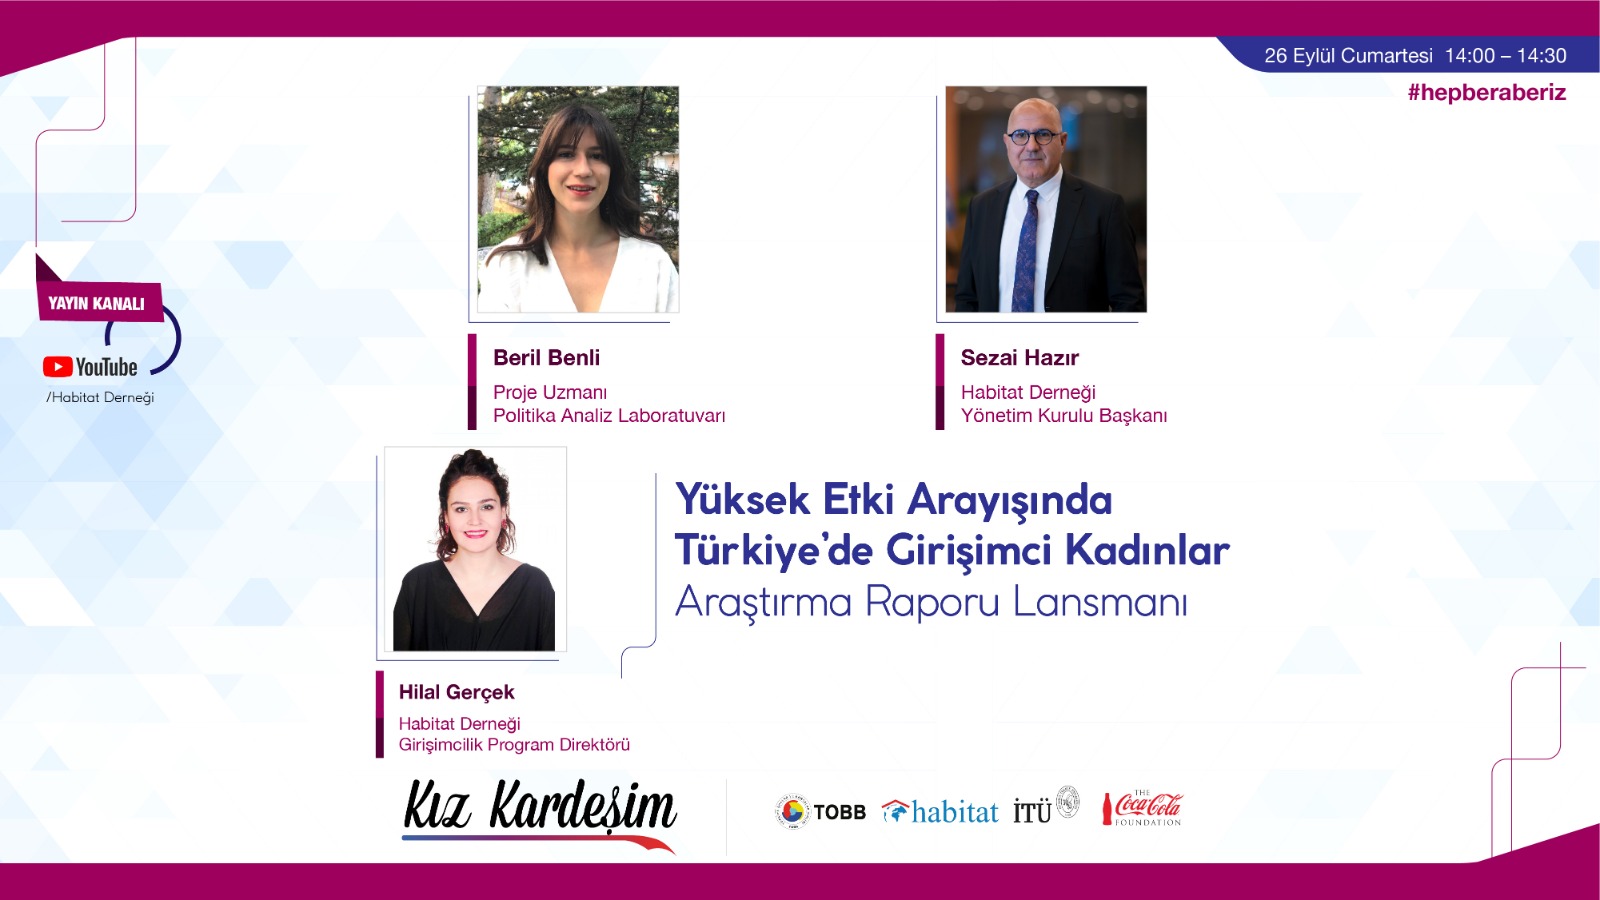 yüksek Etki Arayışında Türkiye’de Girişimci Kadınlar Araştırma Raporu Lansmanı